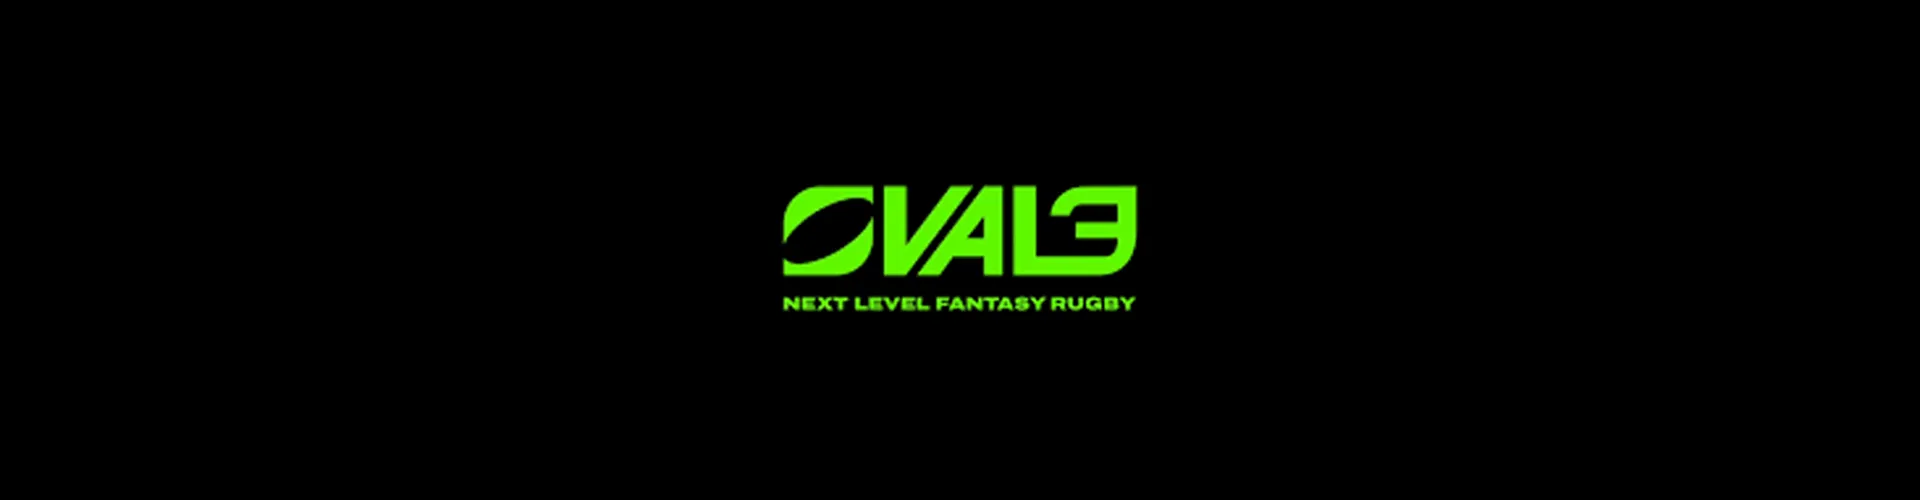 Oval3 : collection, fantasy league. Quels sont les différents aspects qu’offre ce nouvel acteur aux fans de rugby ?